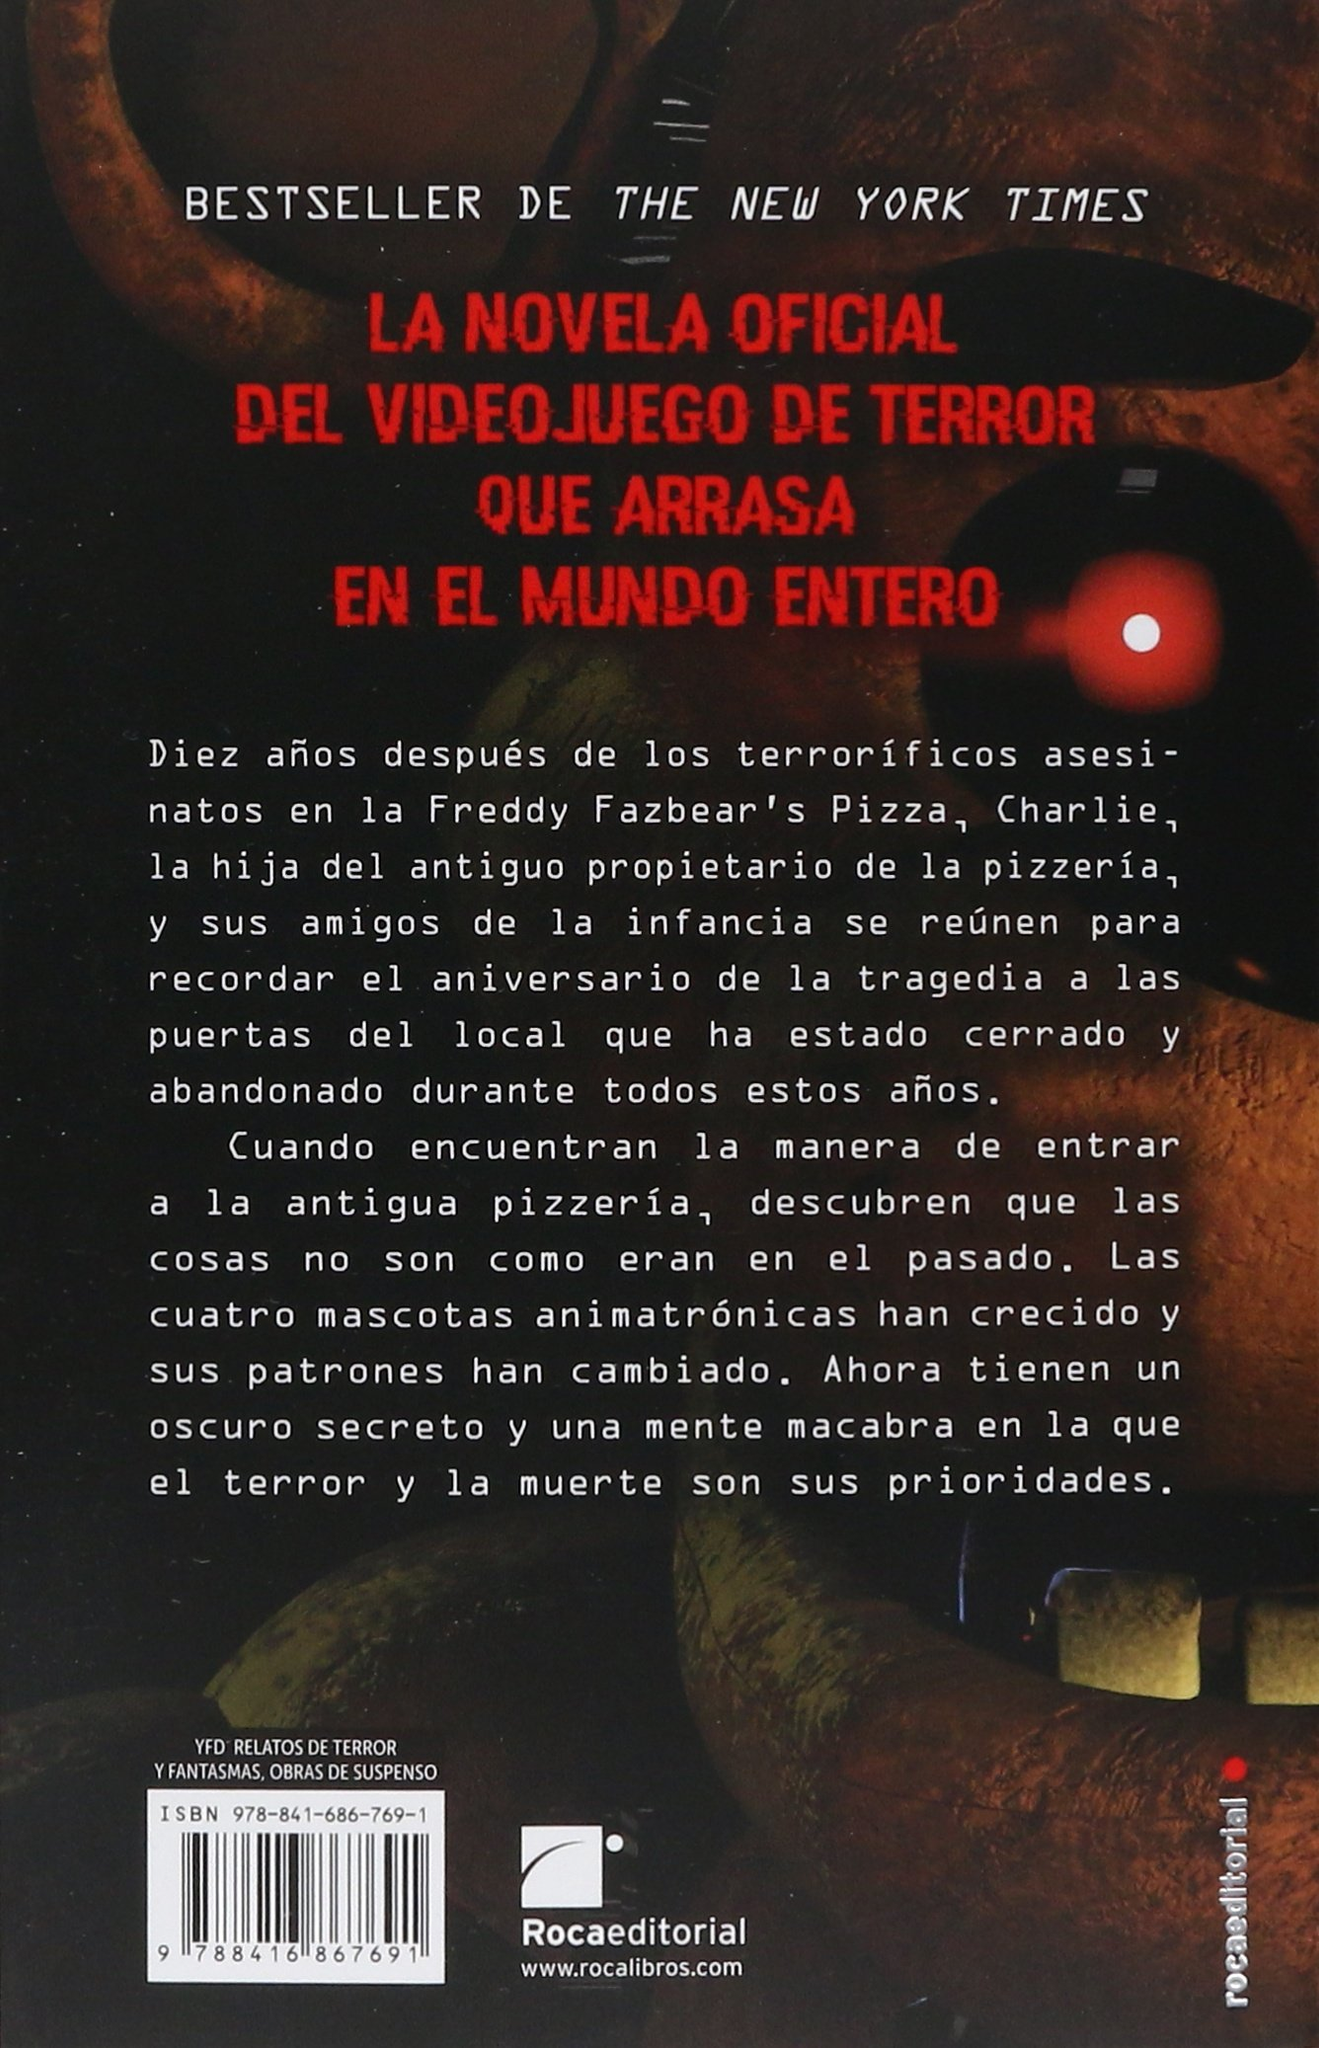 Libro Five Nights At Freddy's - Los Ojos De Plata